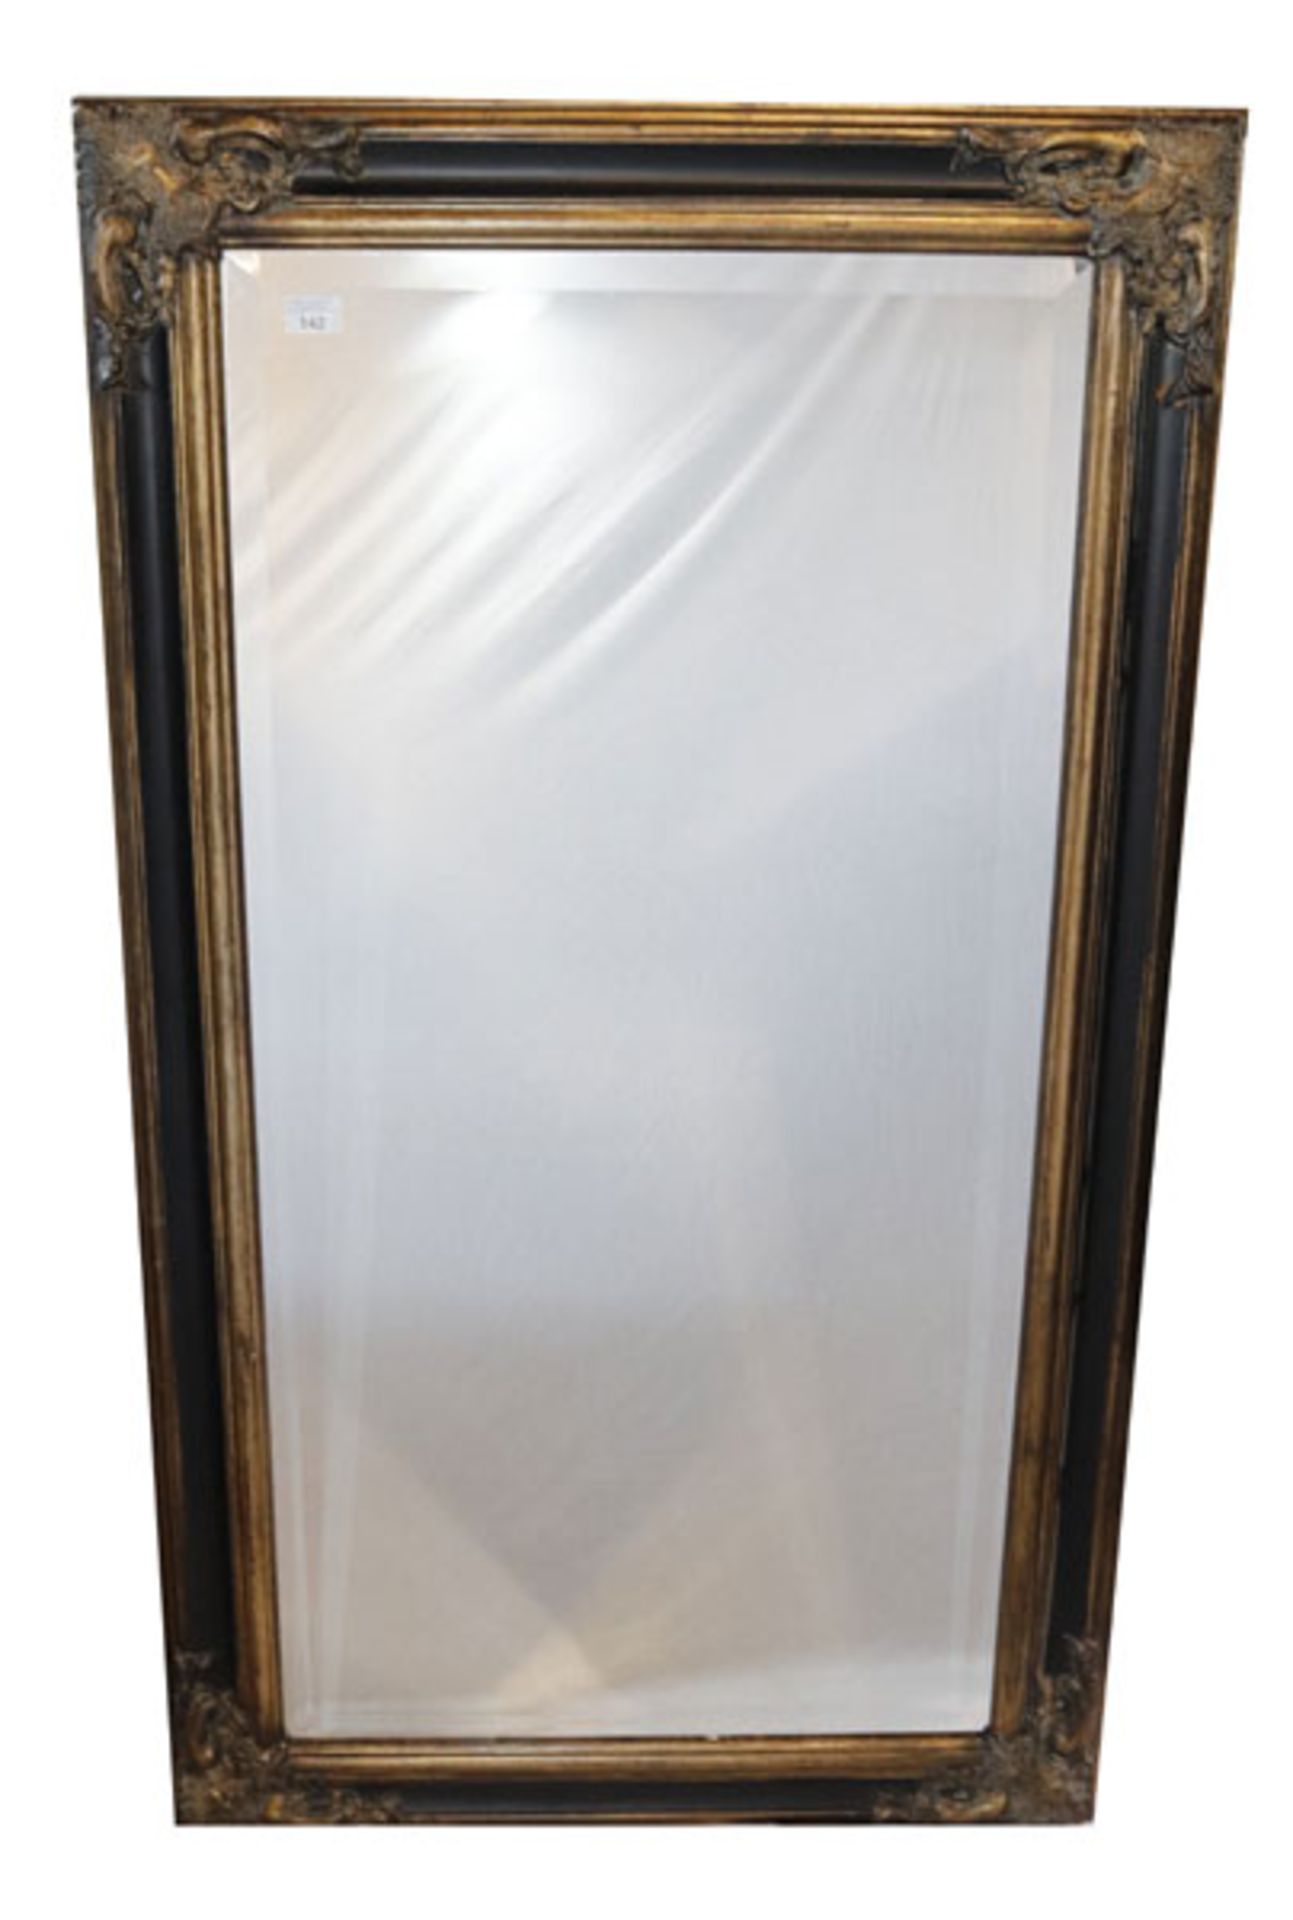 Wandspiegel mit Facettenschliff in dekorativem Rahmen, leichte Farbablösungen, incl. Rahmen 140 cm x